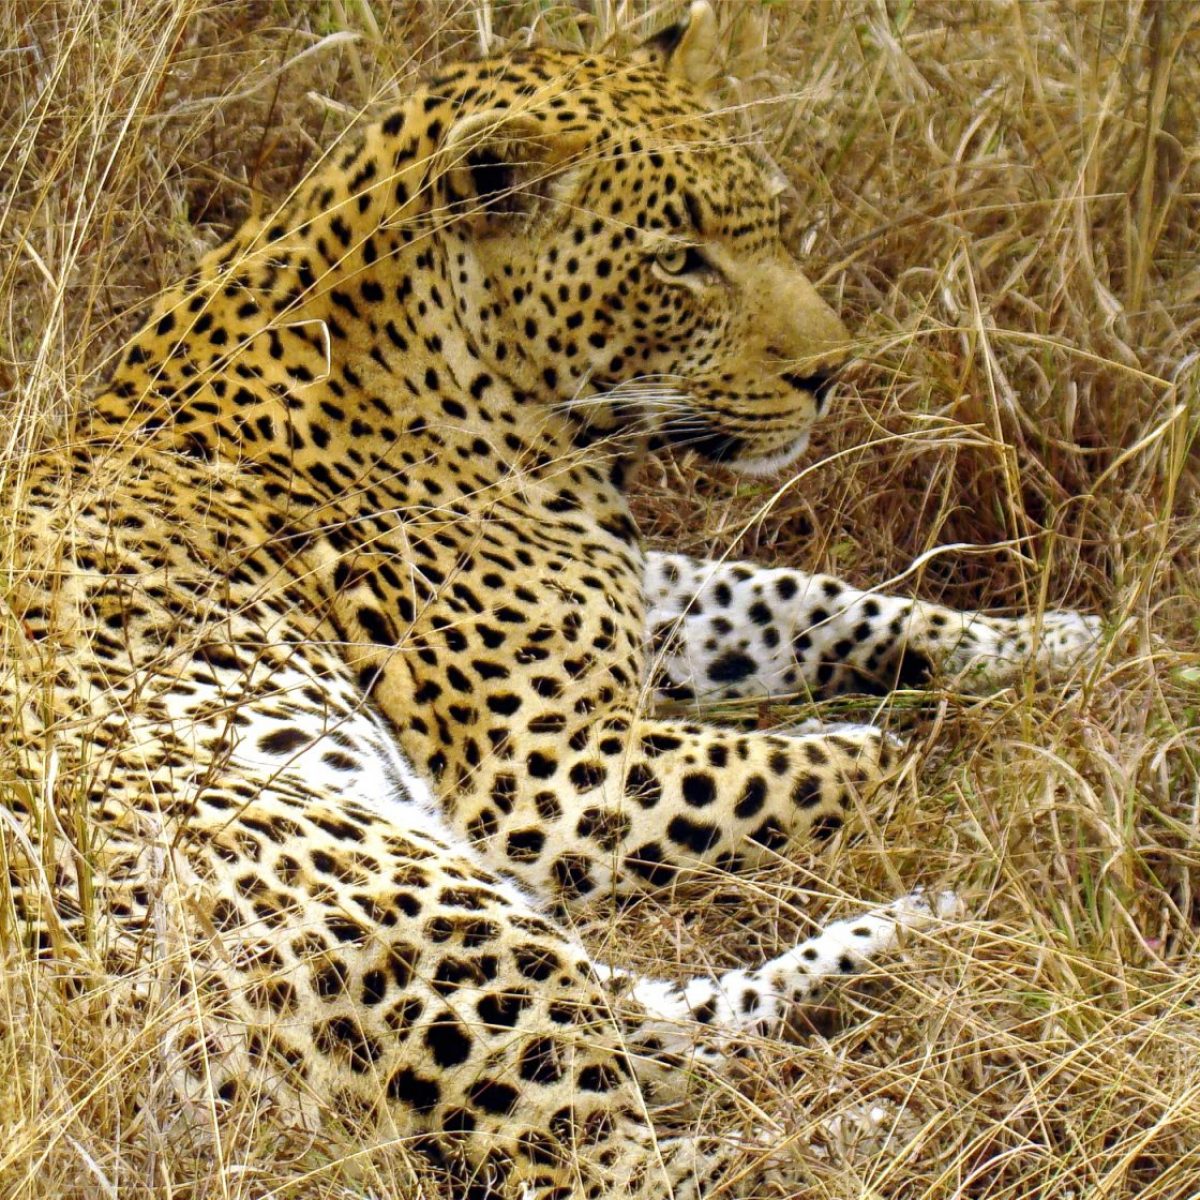 Leopard. Photo credit: Lukas Kaffer. https://commons.wikimedia.org/wiki/File:Great_male_Leopard_in_South_Afrika-JD.JPG